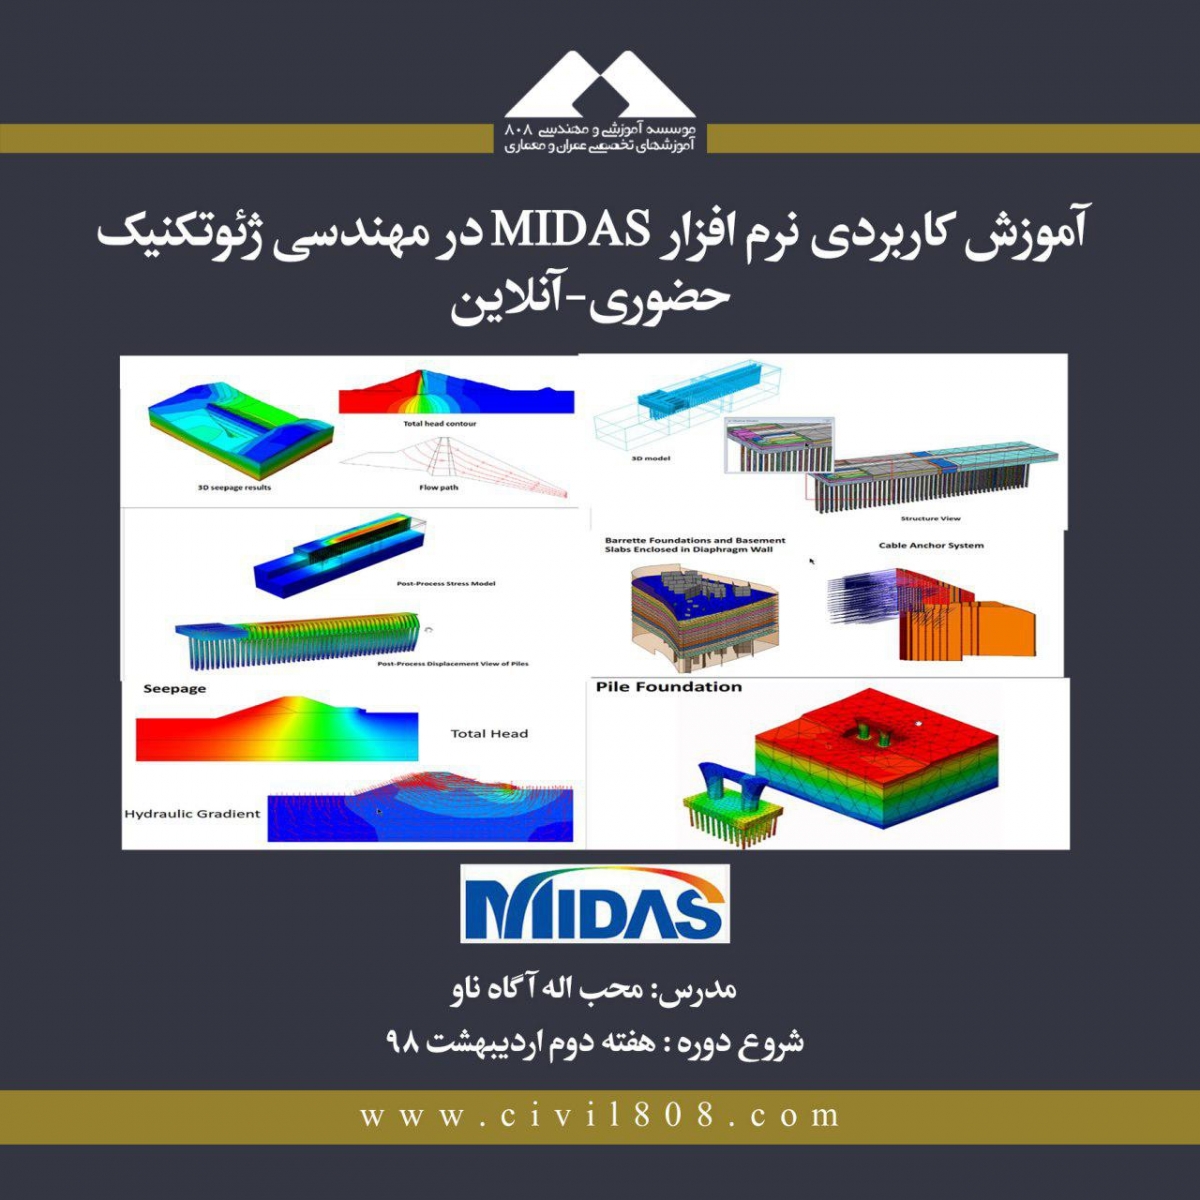 دوره آموزش کاربردی نرم افزار MIDAS در مهندسی ژئوتکنیک (حضوری و آنلاین)